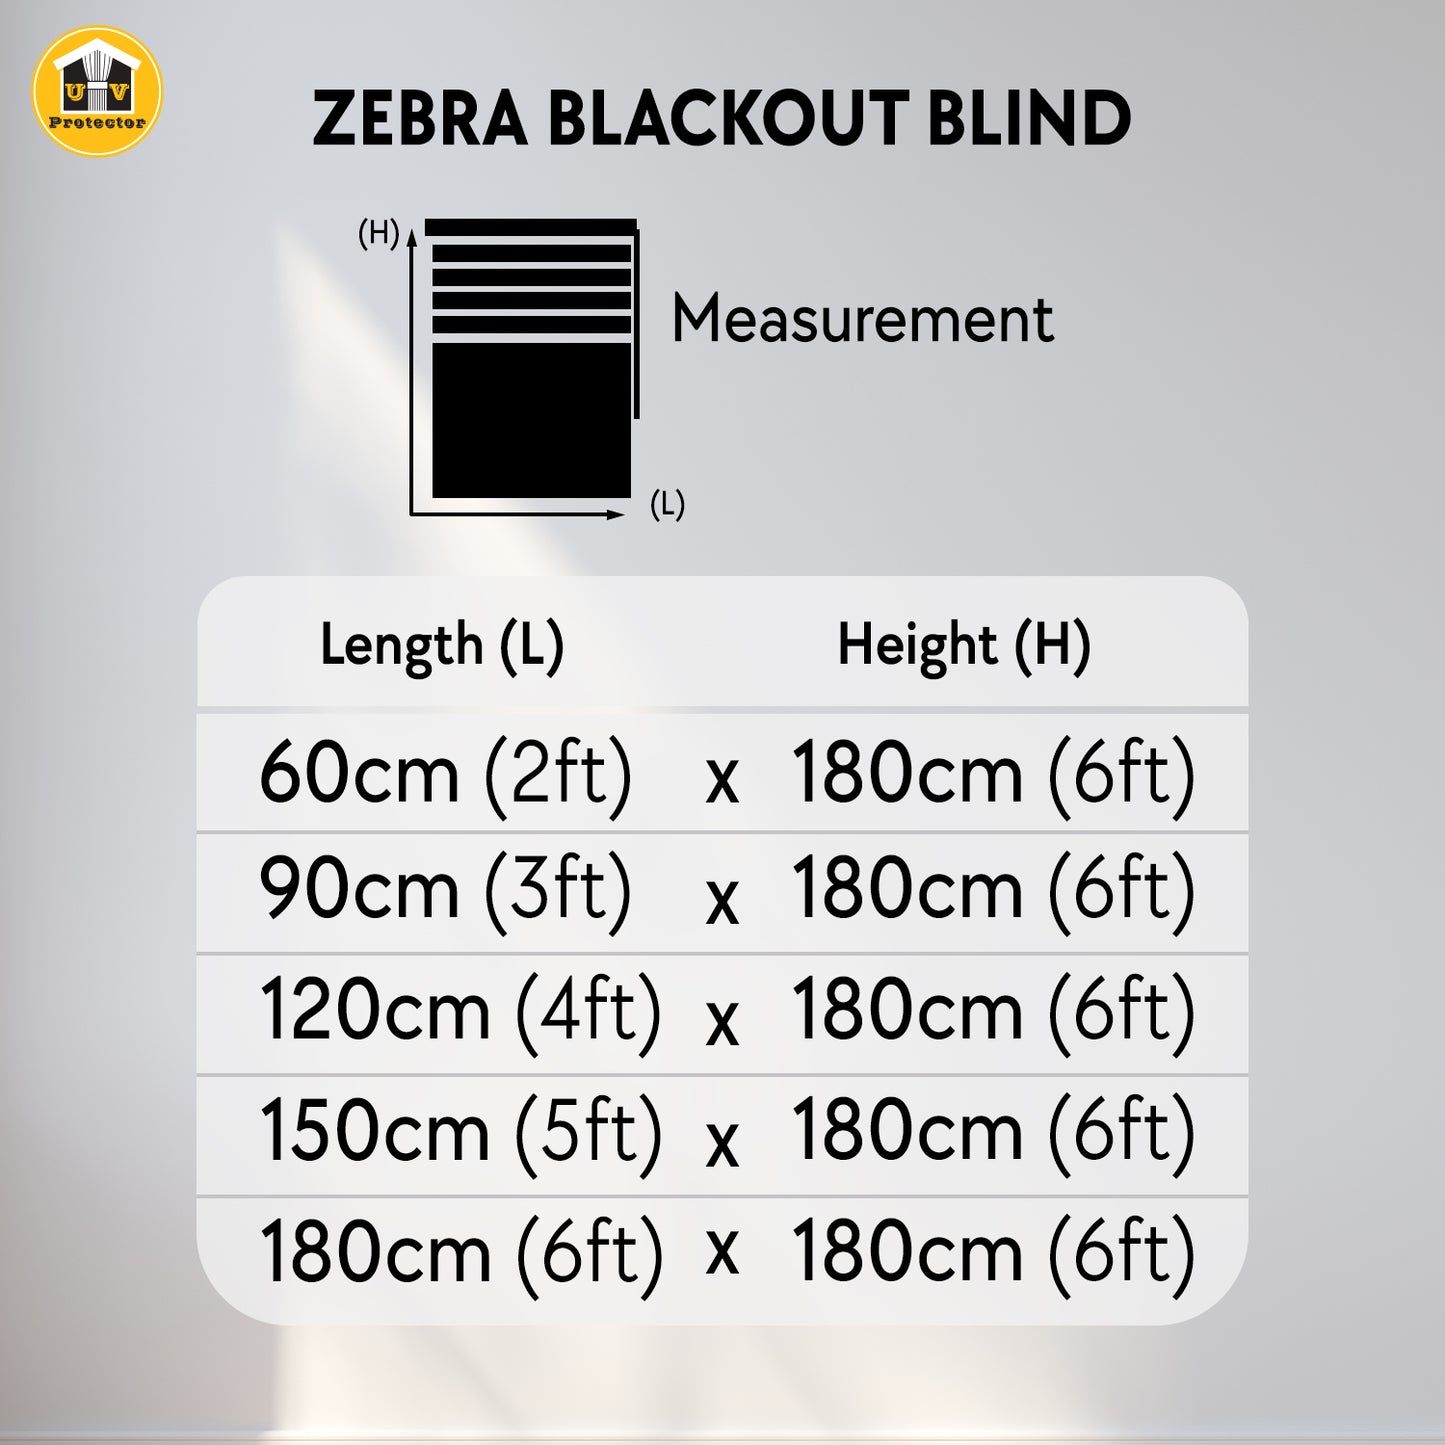 NEW UVP 99% Blackout Zebra Blind